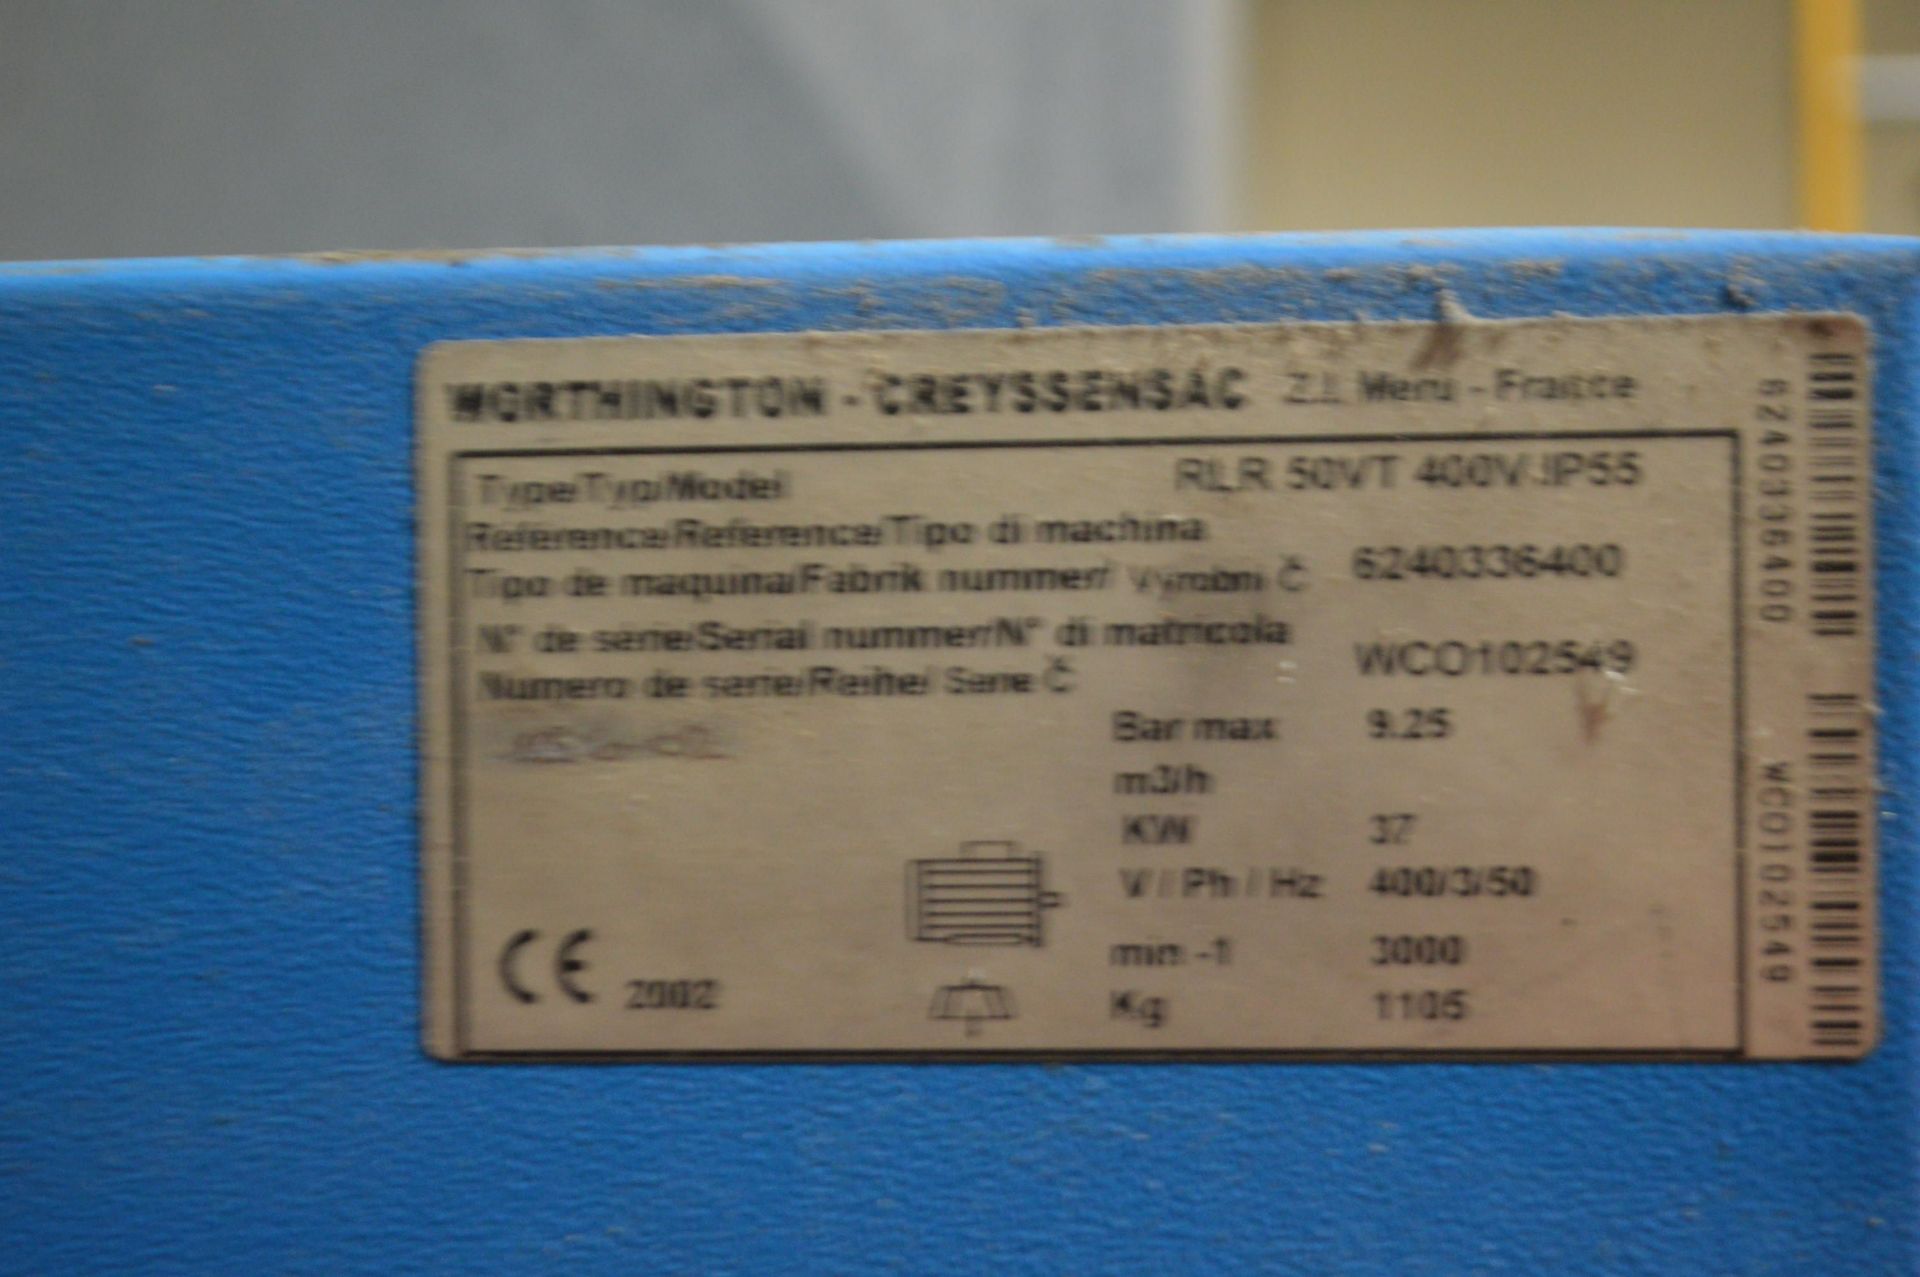 Worthington Creyssensac ROLLAIR 50VT PACKAGE AIR COMPRESSOR, serial no. WCO102549, reference no. - Bild 4 aus 4